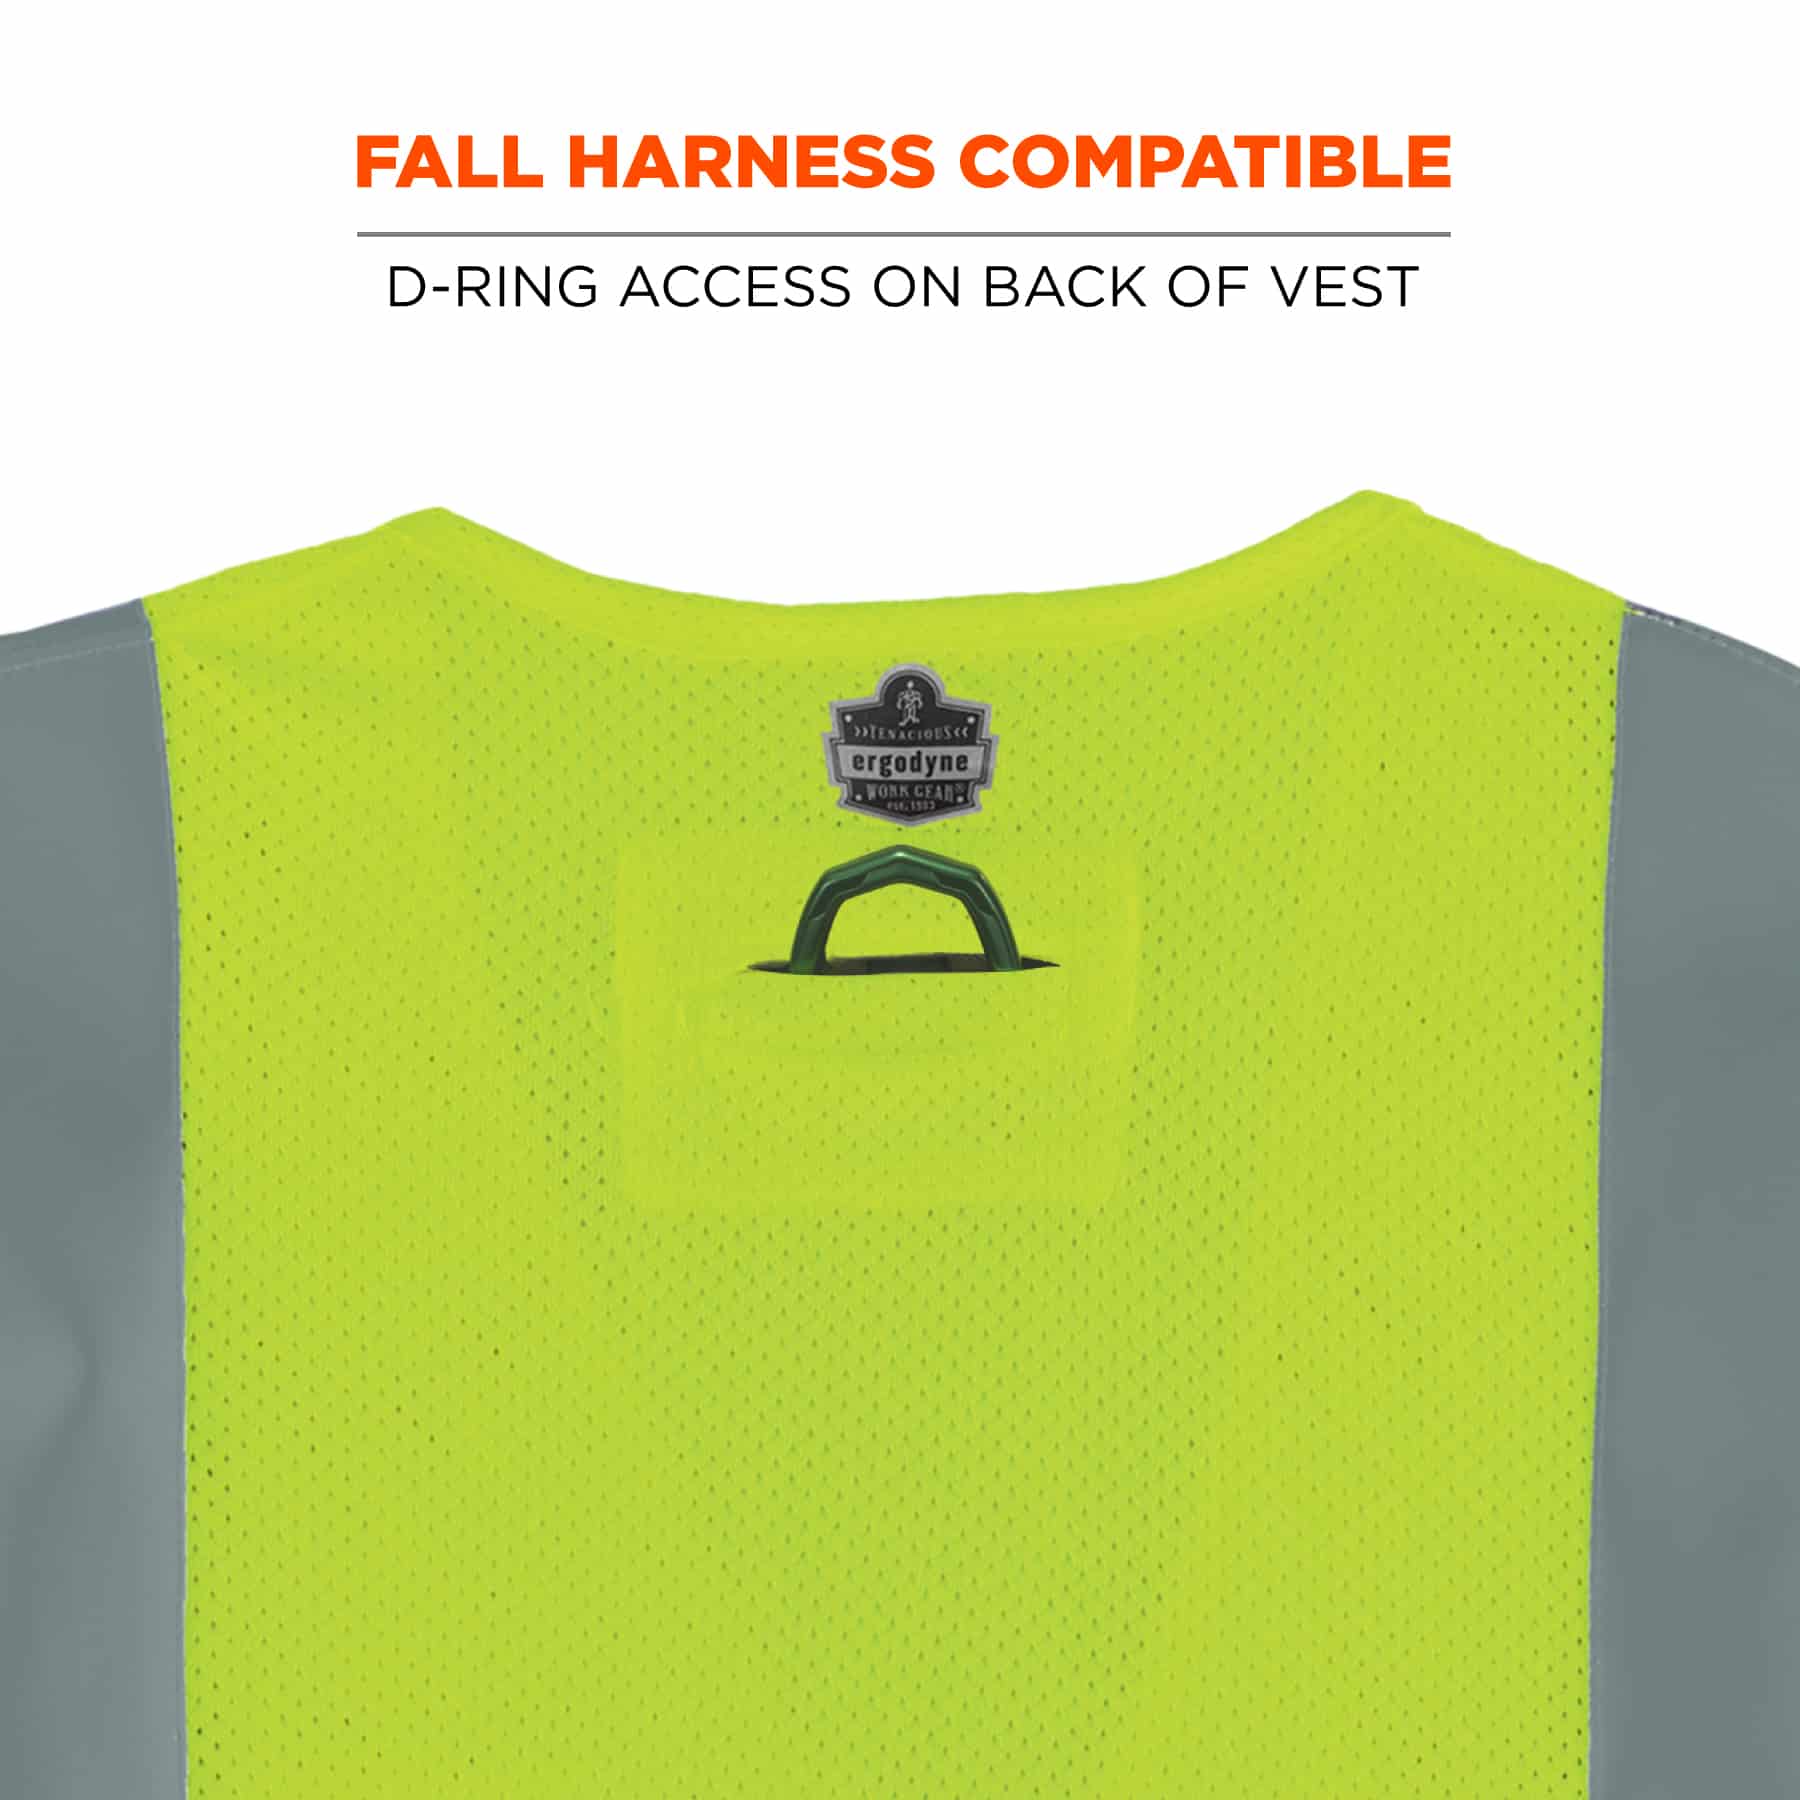 https://www.ergodyne.com/sites/default/files/product-images/21493-8260frhl-hi-vis-fr-safety-vest-fall-harness-compatible.jpg